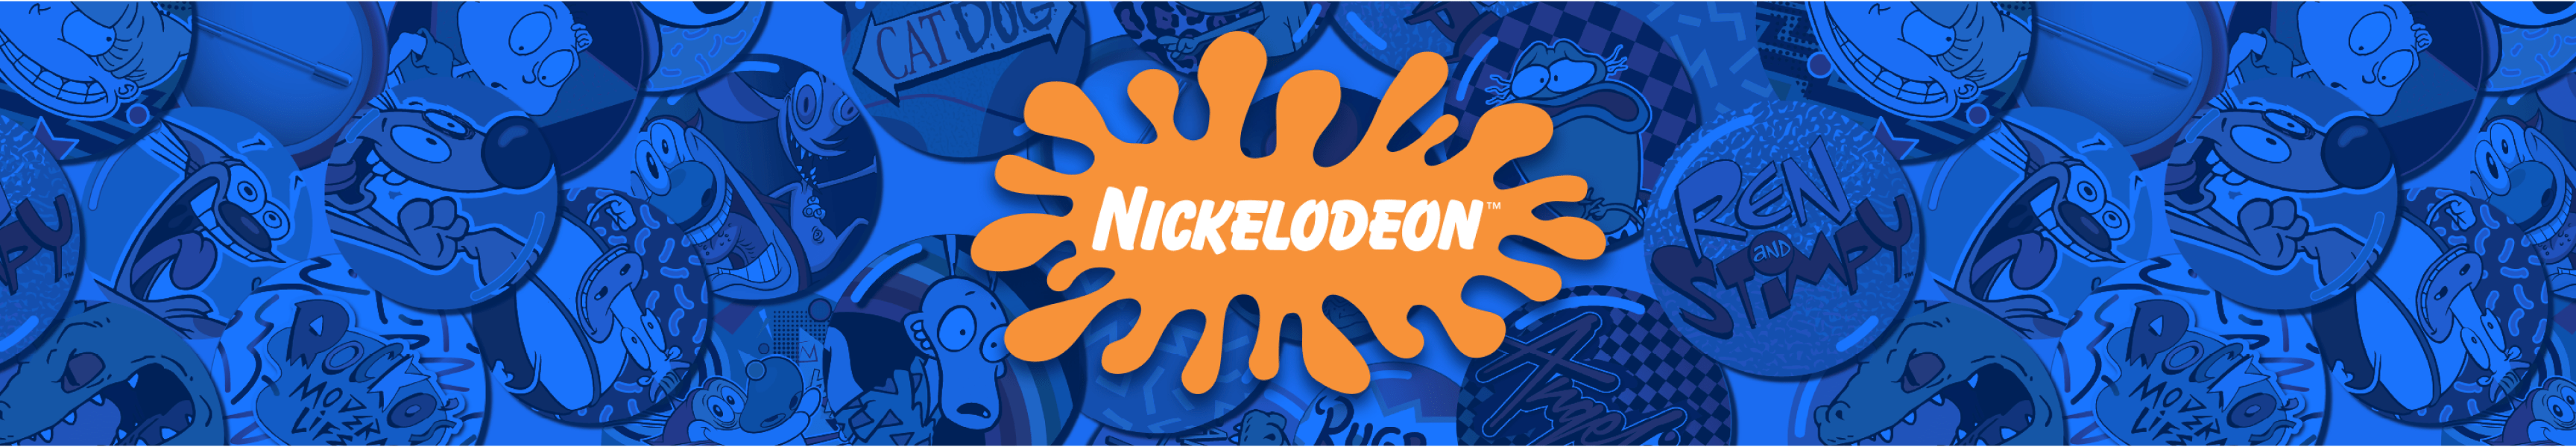 Retro-Nickelodeon